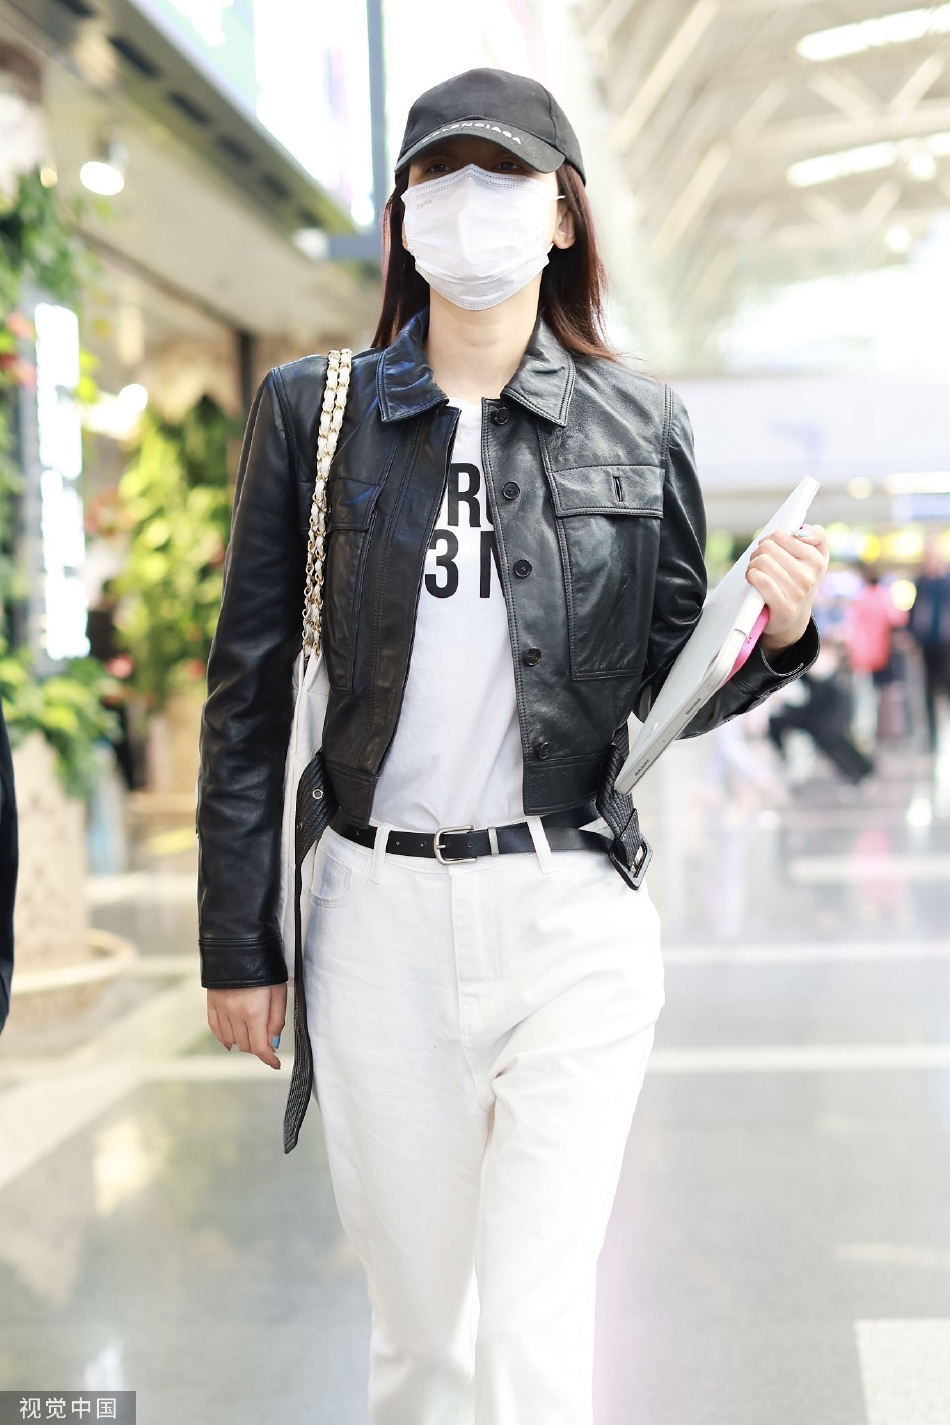 孙怡穿搭时尚现身机场 黑色皮衣搭配白色休闲裤酷拽随性